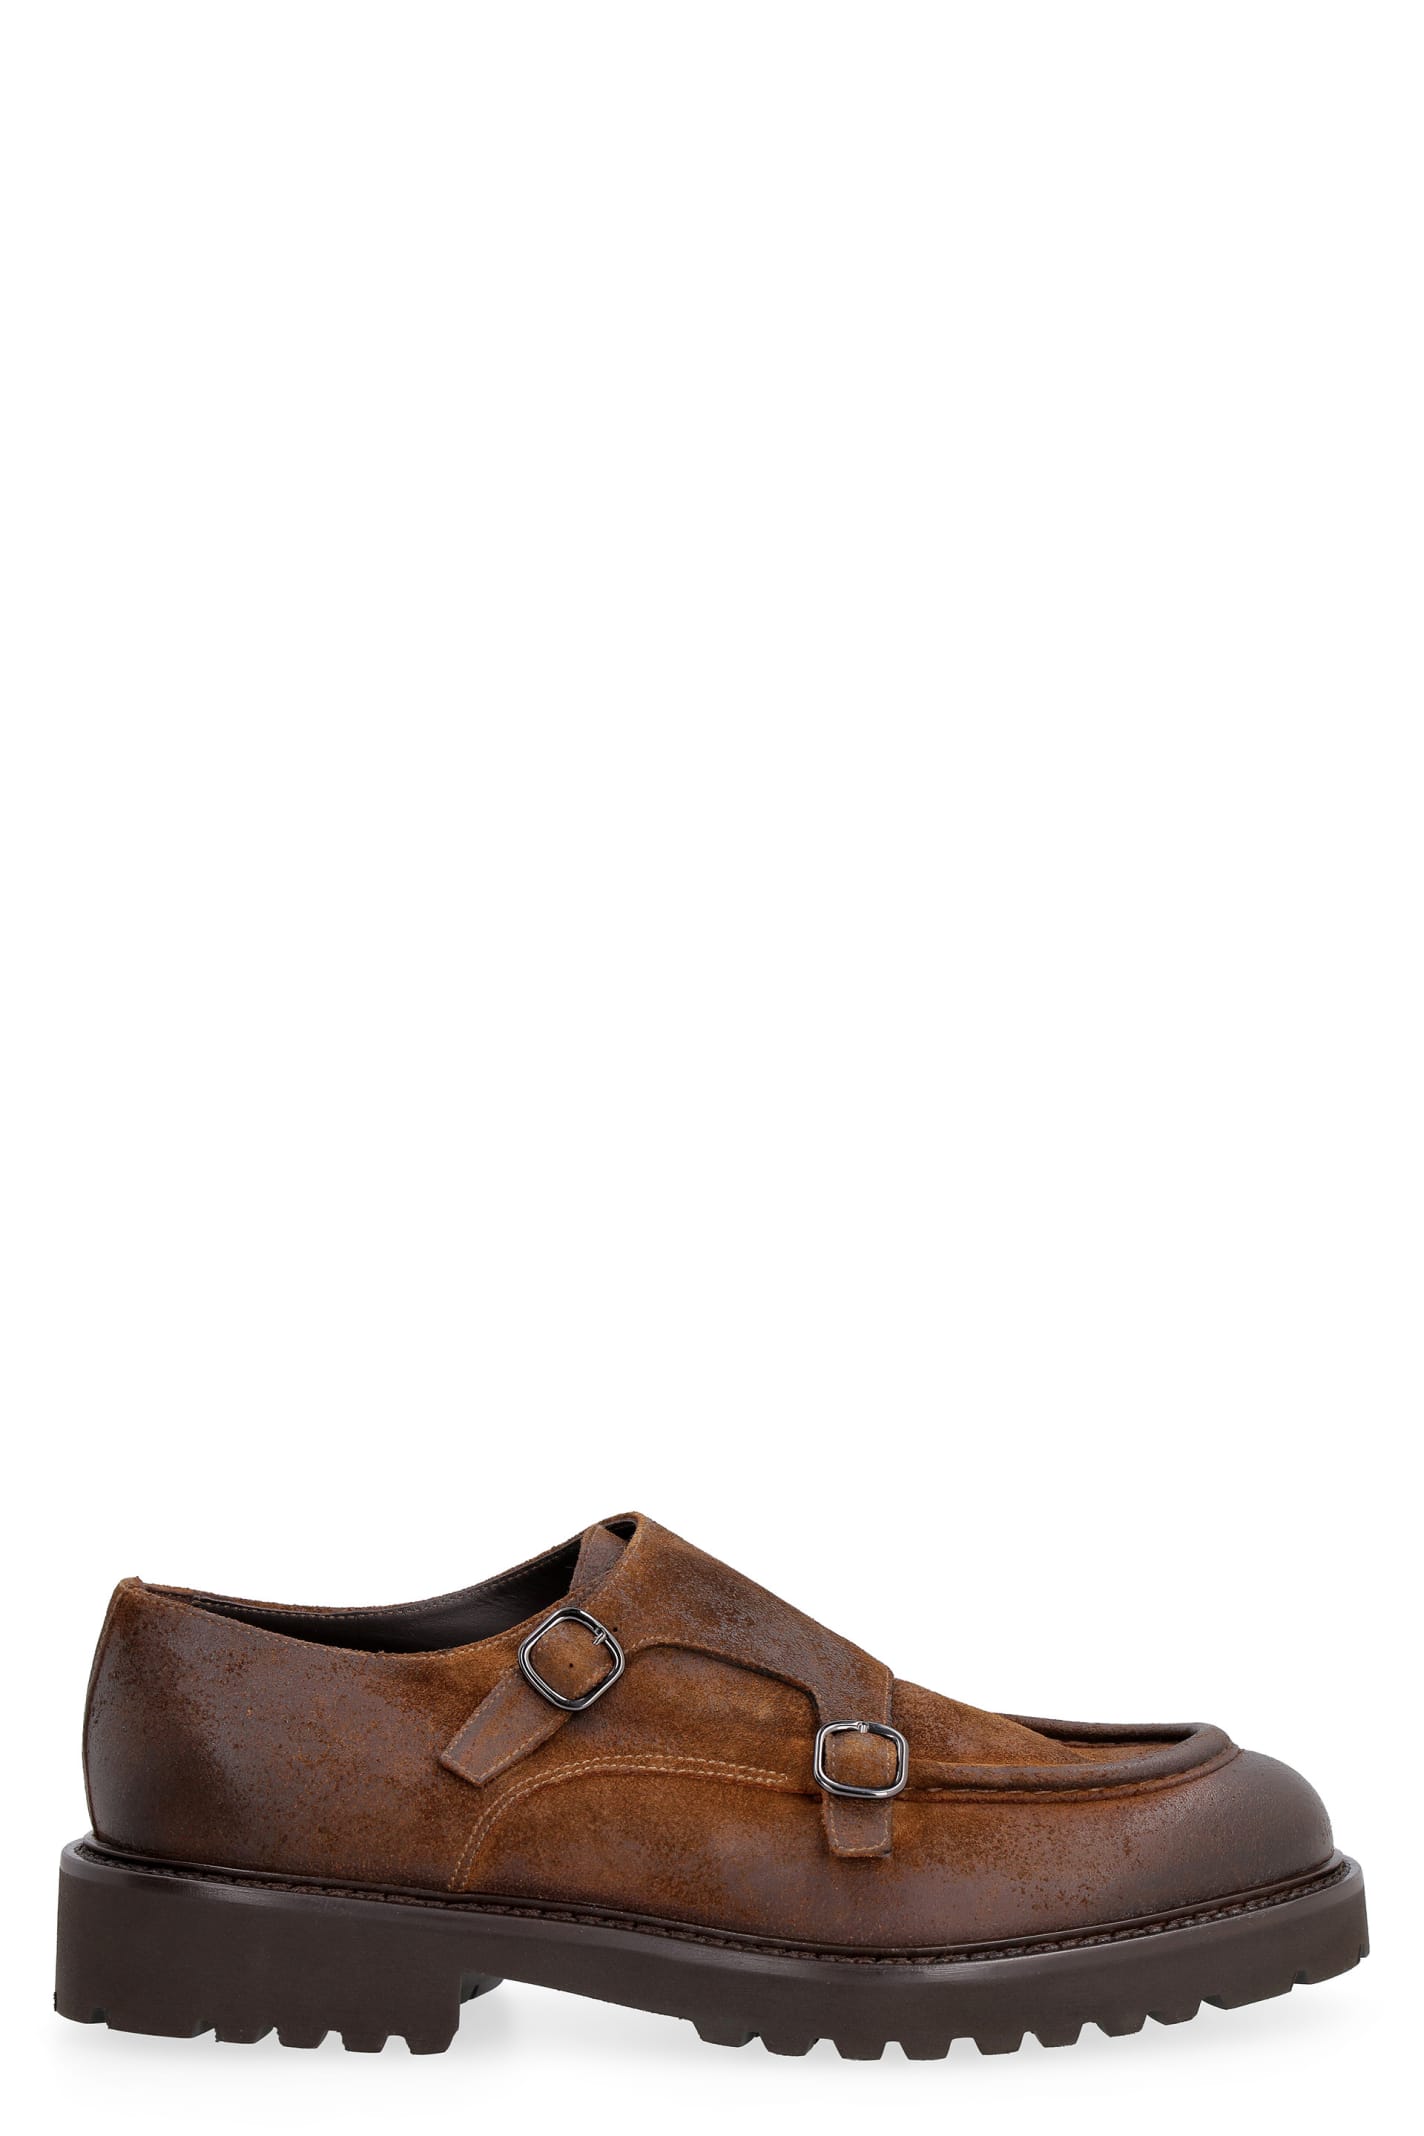 Doucals Suede Monk-strap Shoes